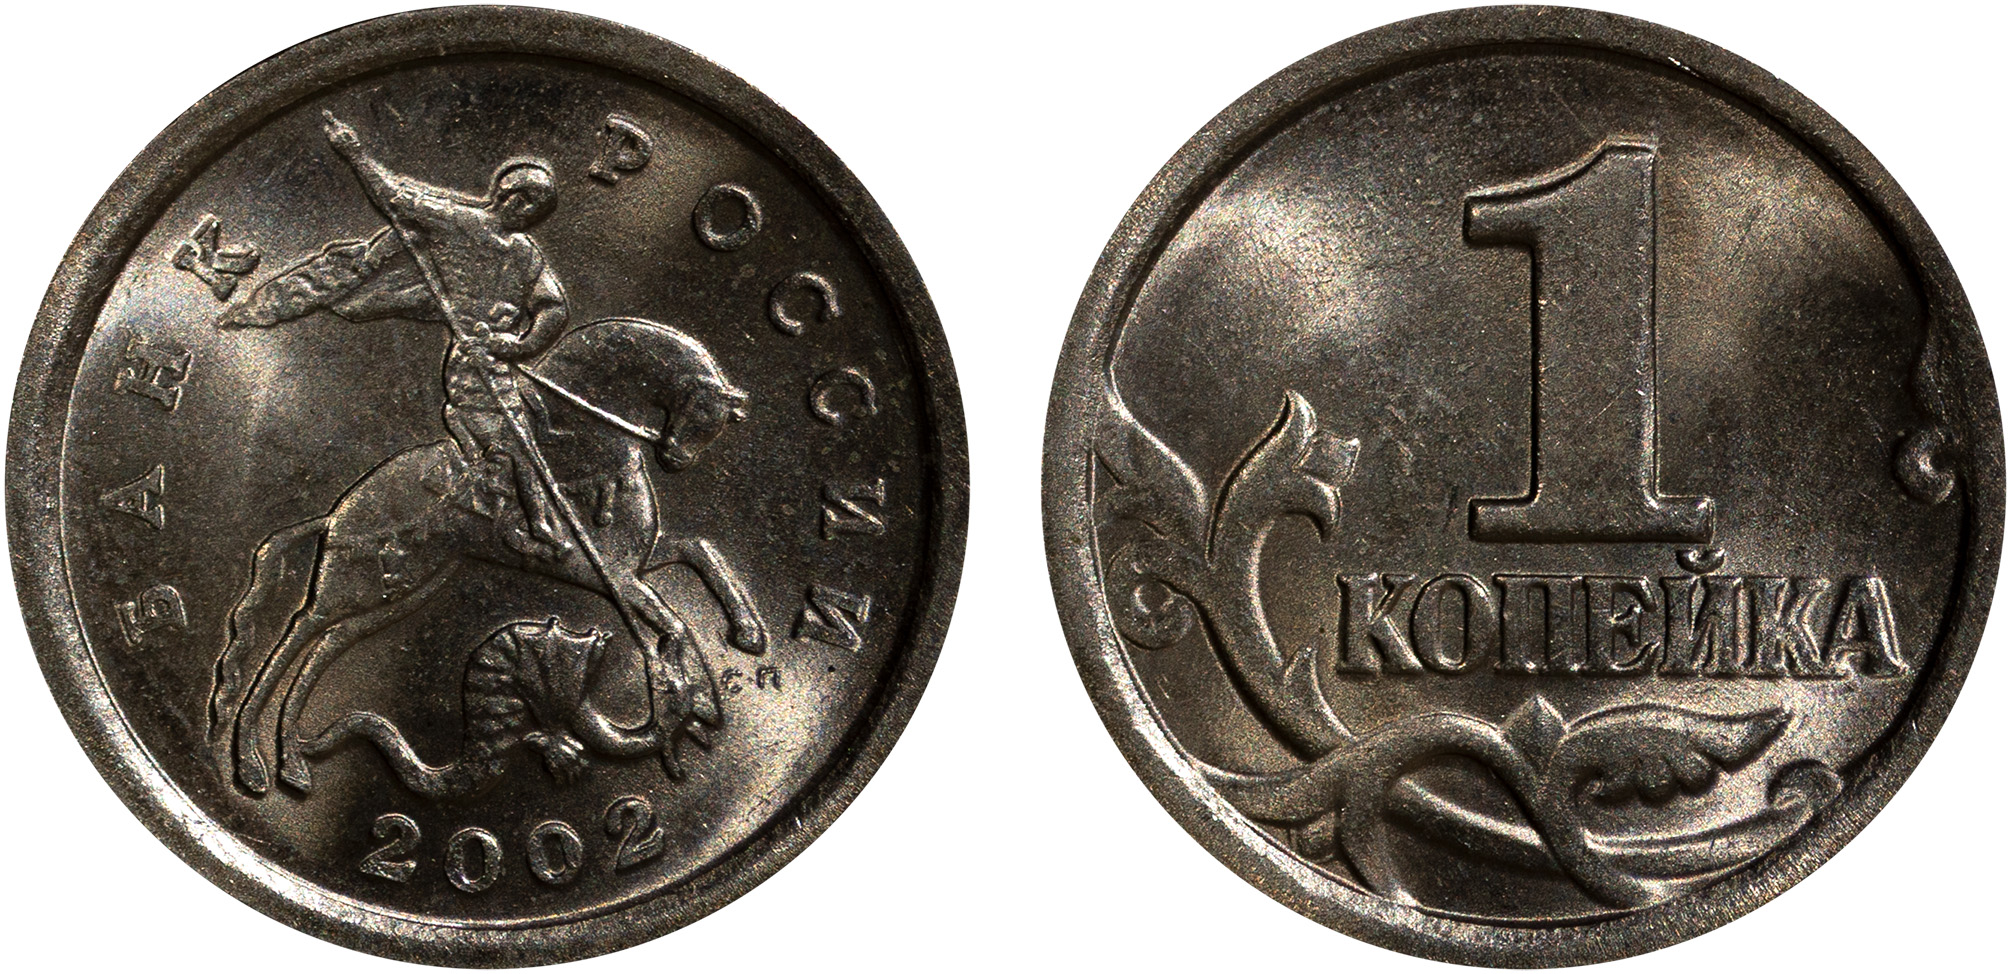 1 Копейка 2002 год. СП (Санкт-Петербургский монетный двор)